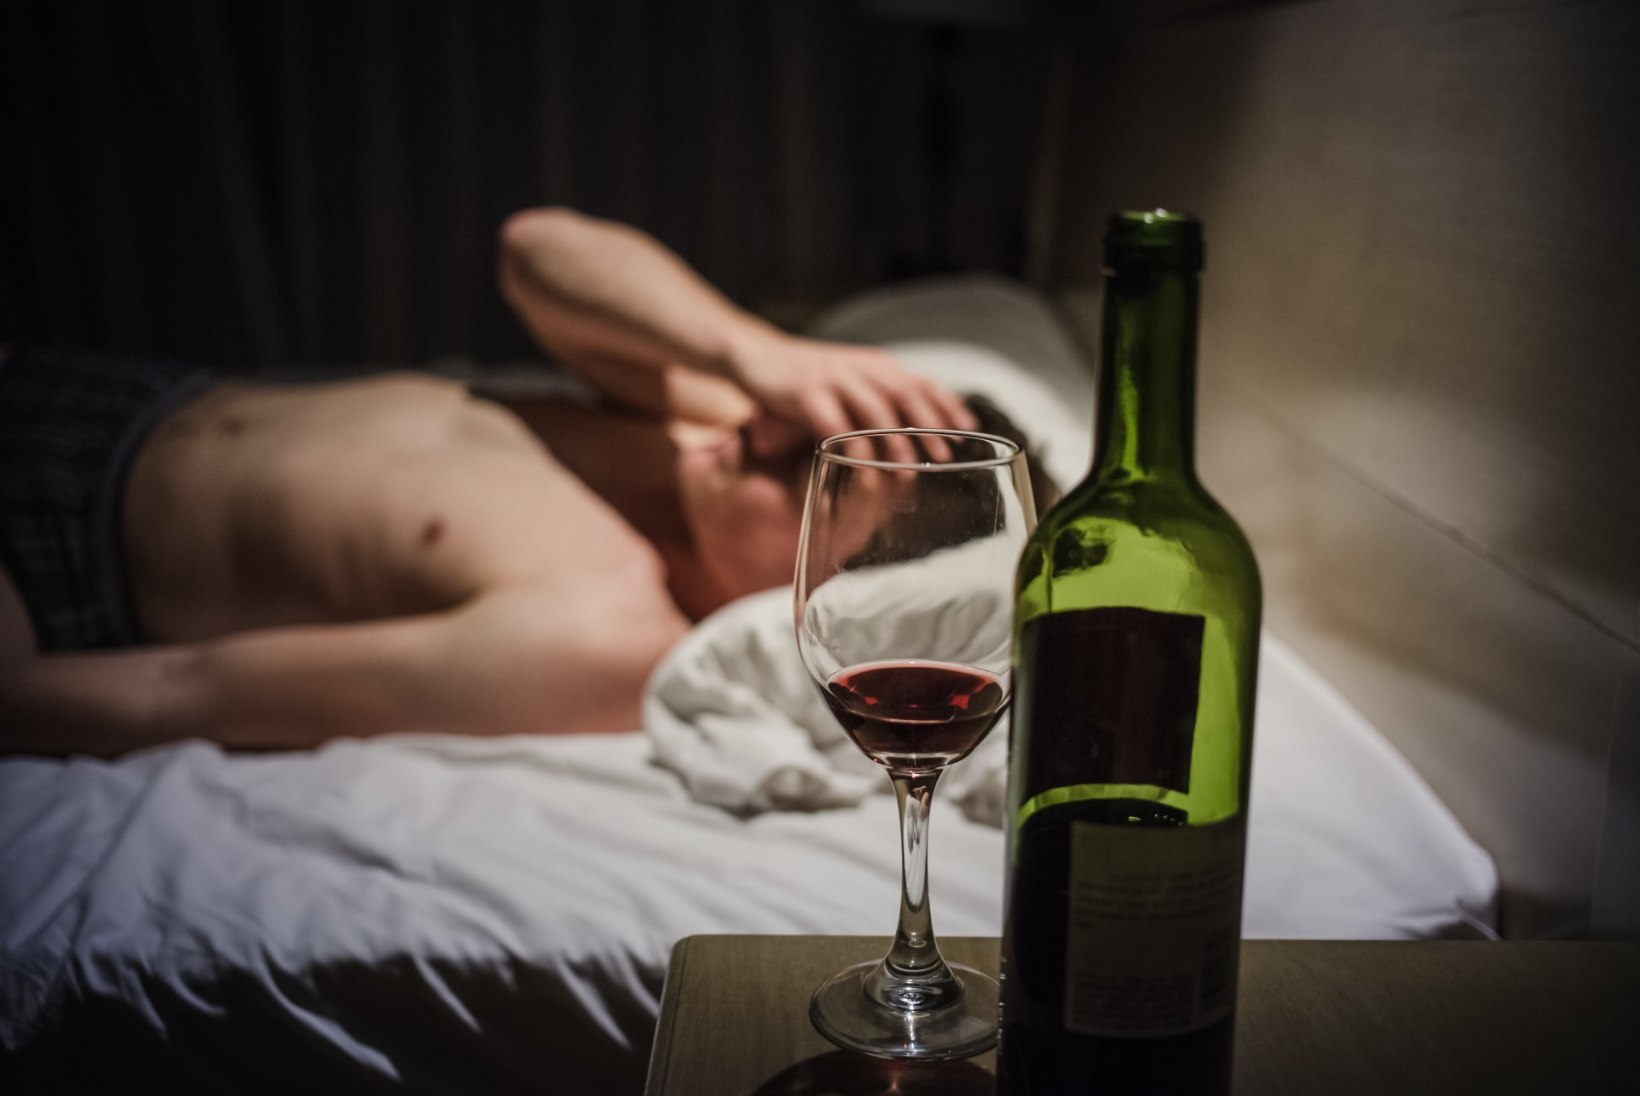 Miks pärast veinijoomist pea valutama hakkab?